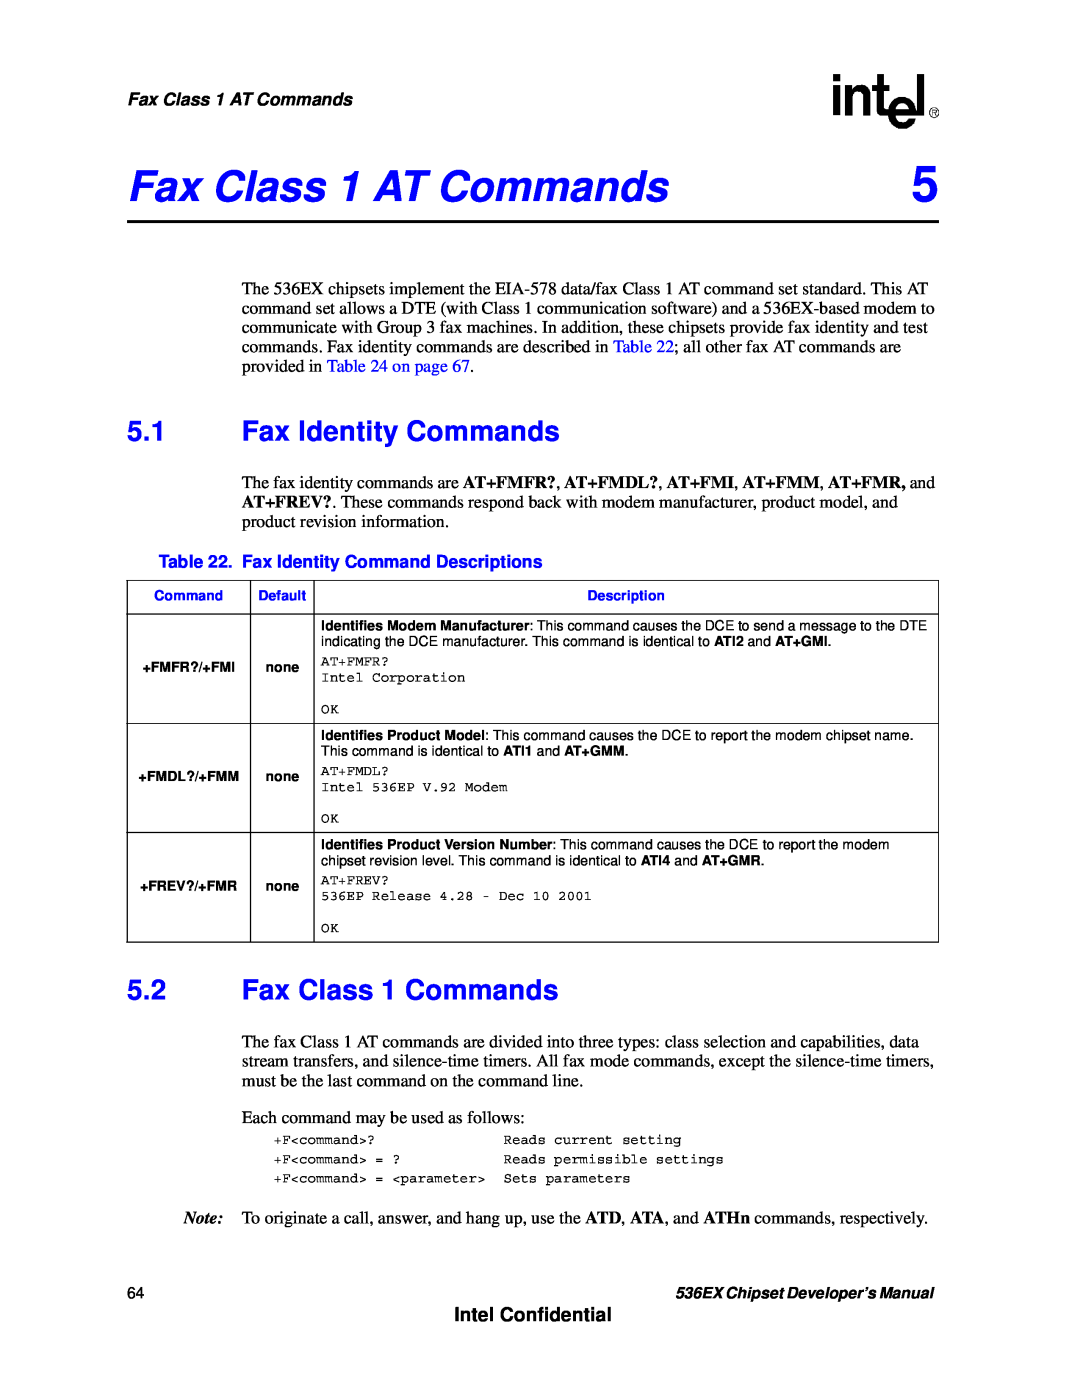 Intel 537EX manual Fax Class 1 AT Commands, 5.1Fax Identity Commands, 5.2Fax Class 1 Commands, Intel Confidential 